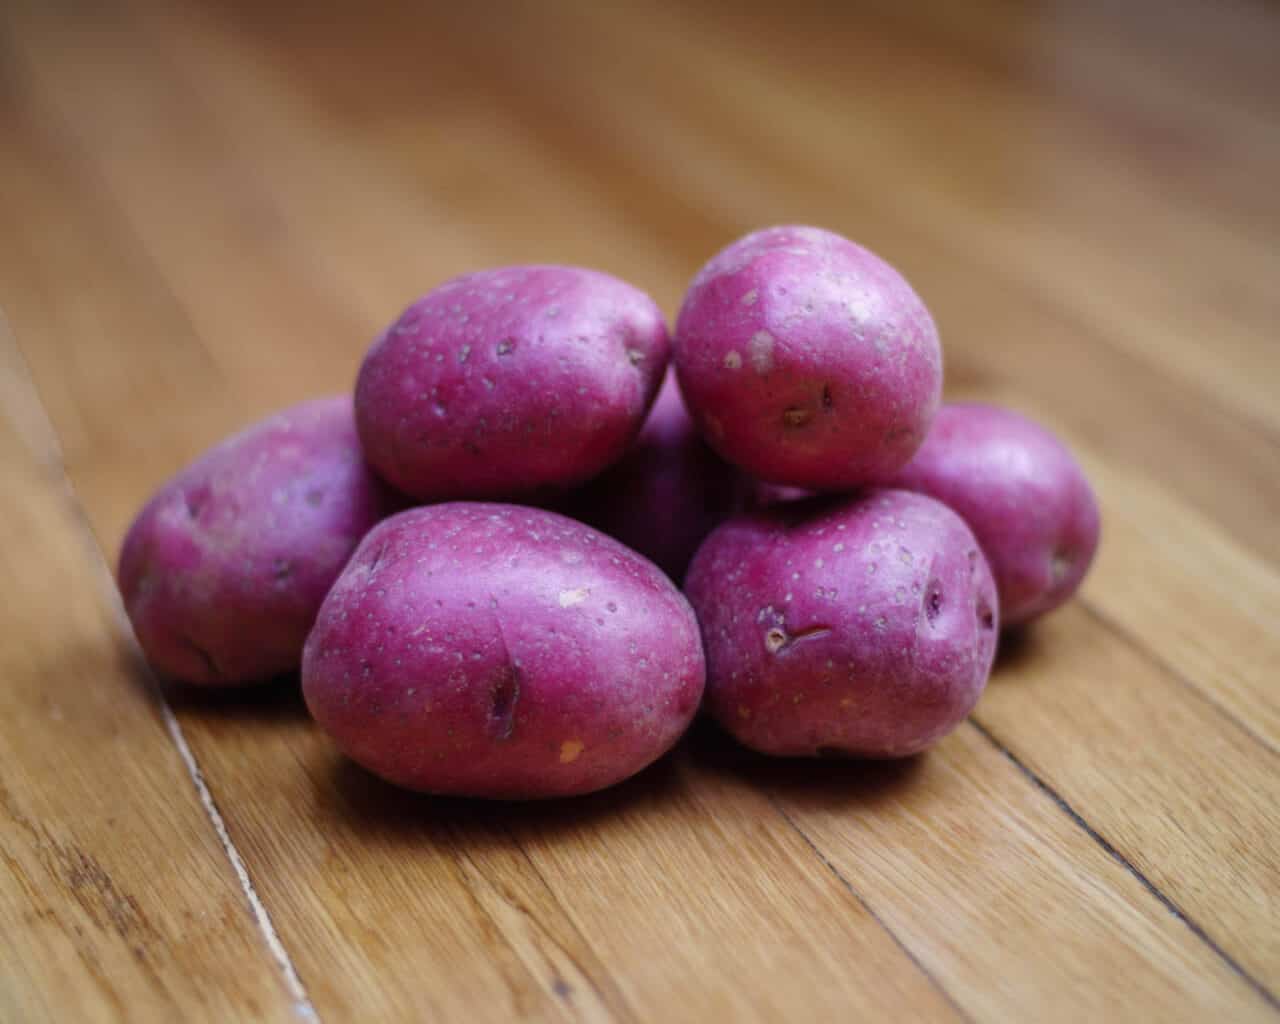 New-Potato Salad With Hazelnuts